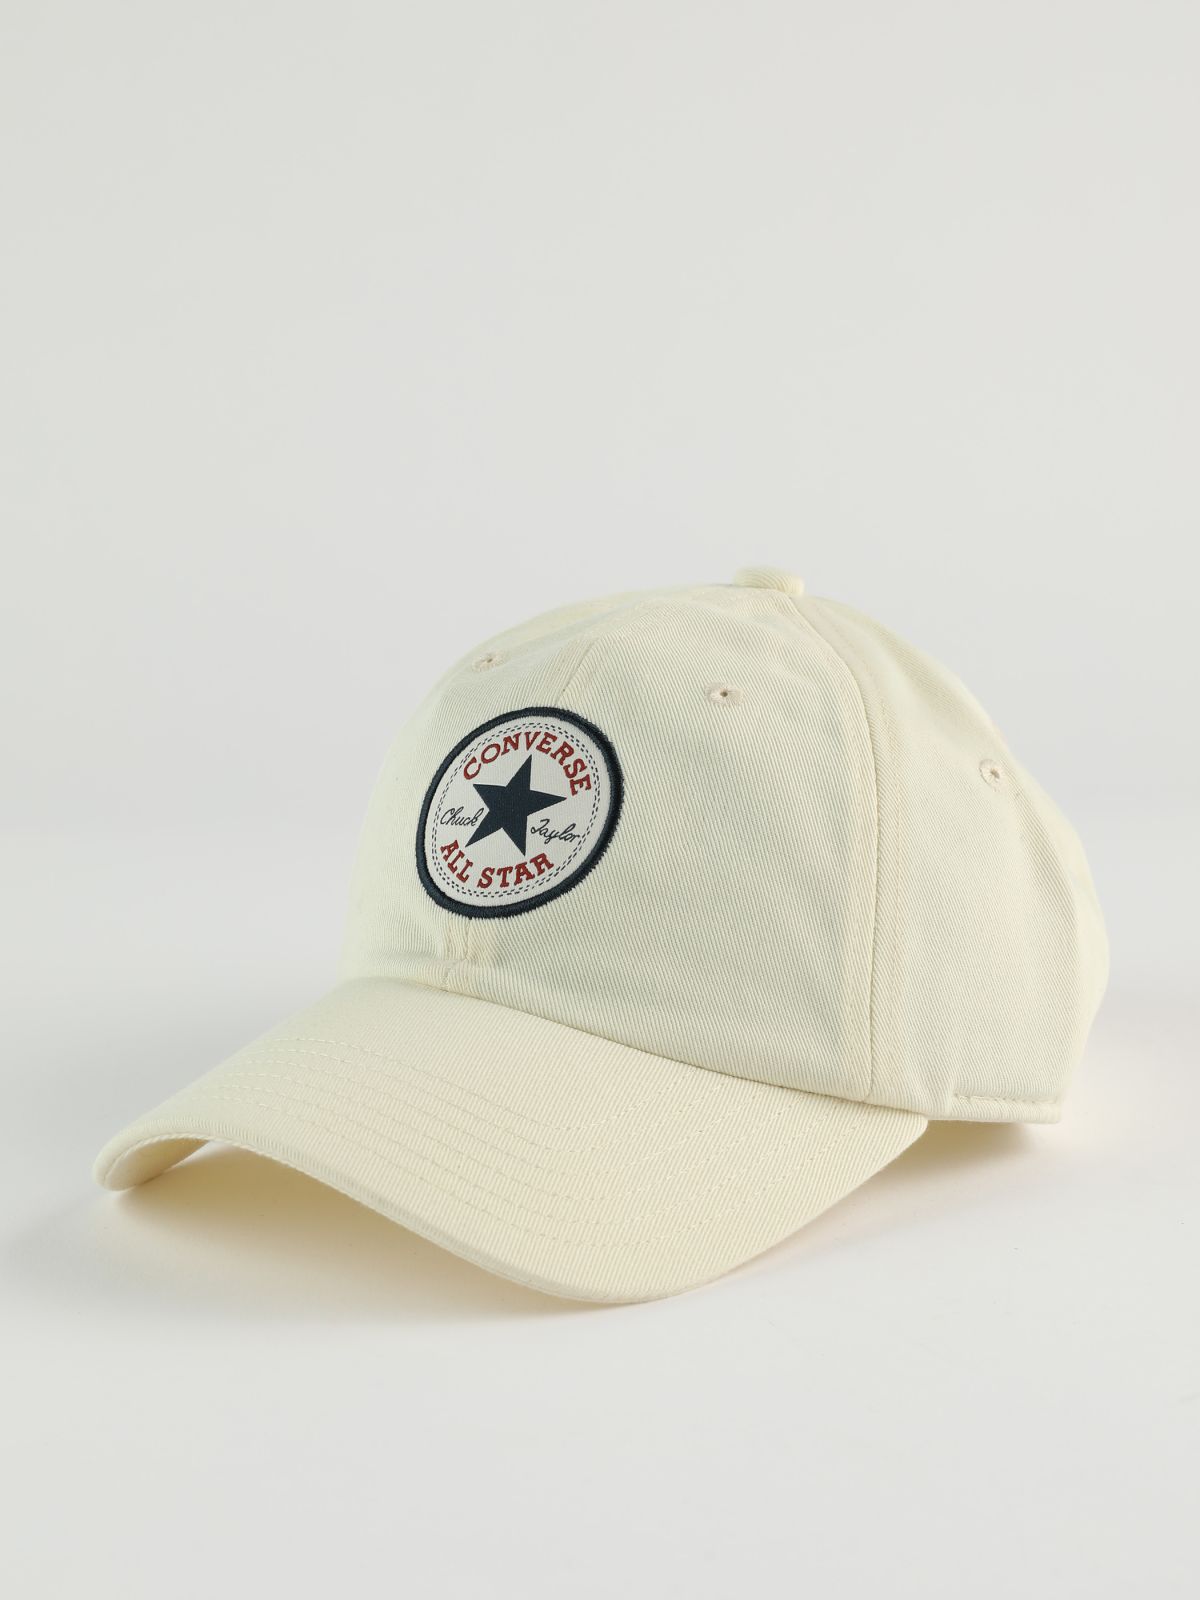  כובע מצחייה עם לוגו / גברים של CONVERSE